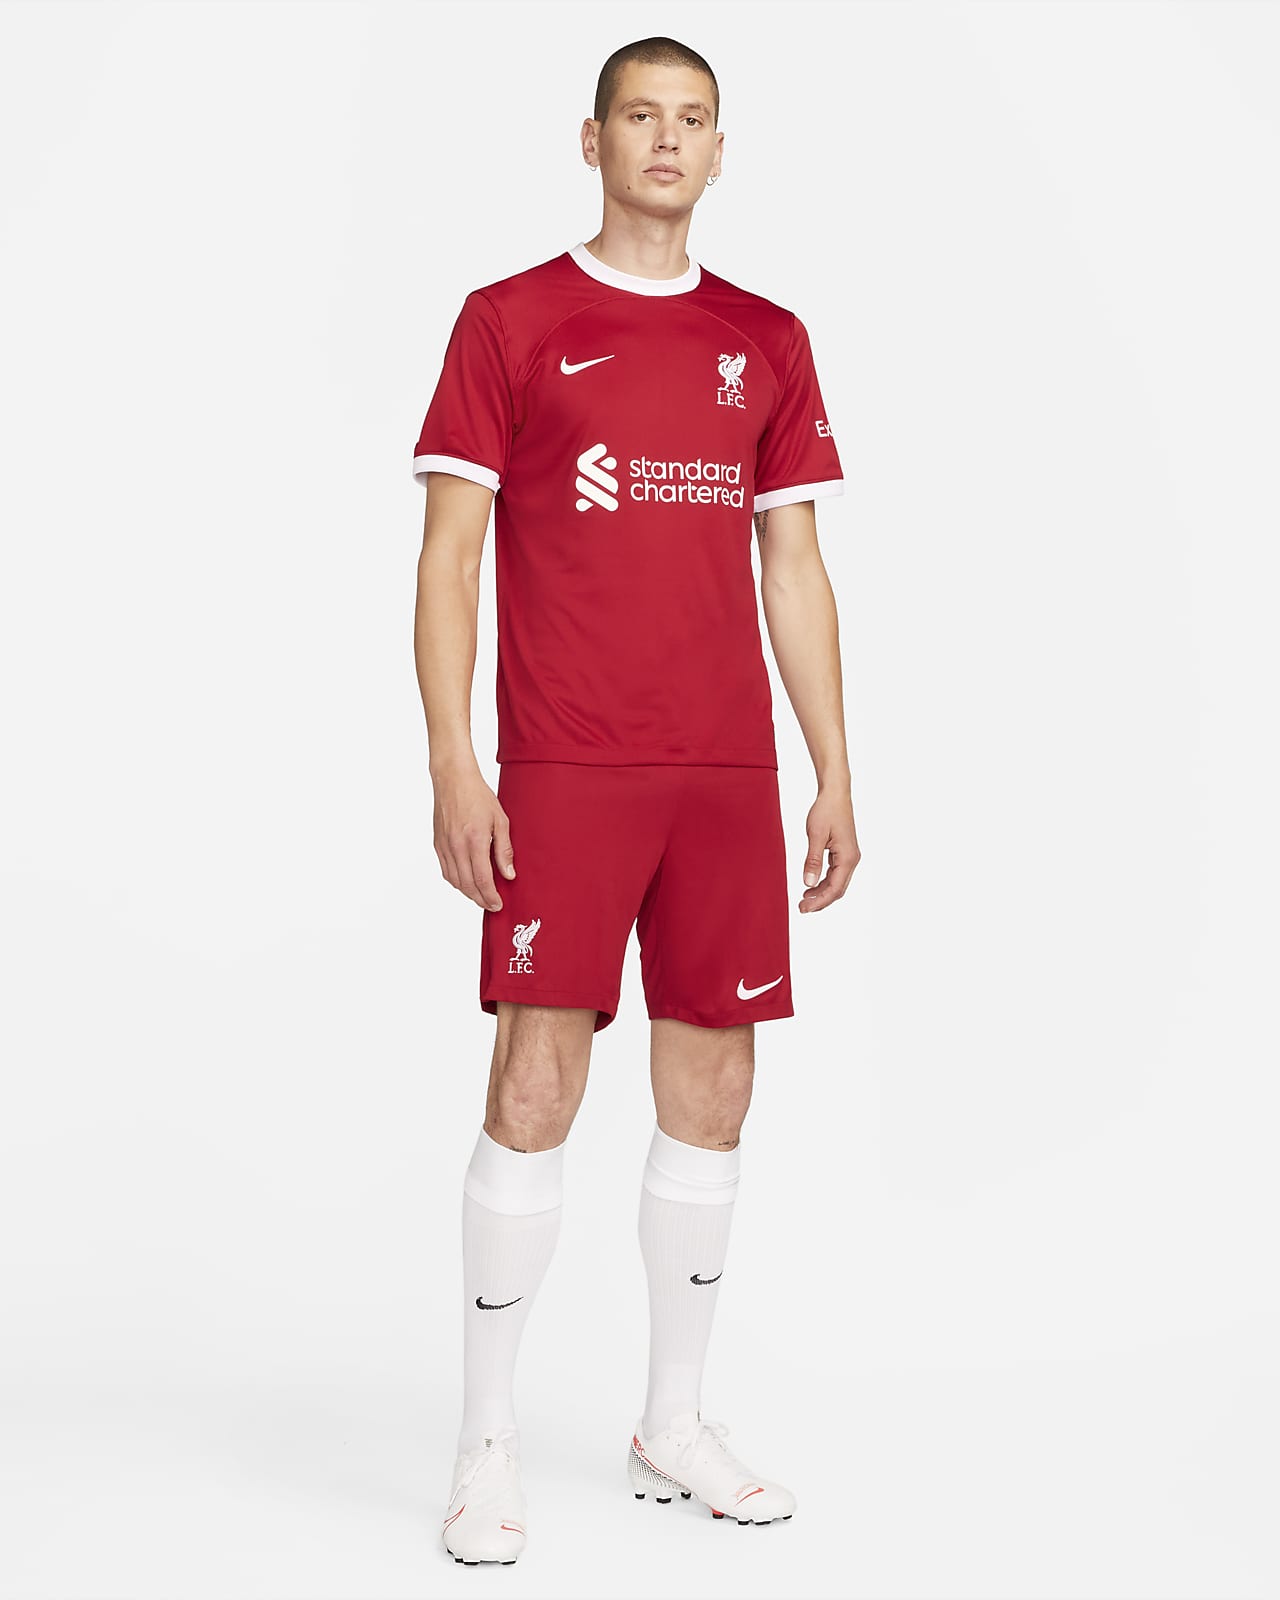 Liverpool F.C - AS.com